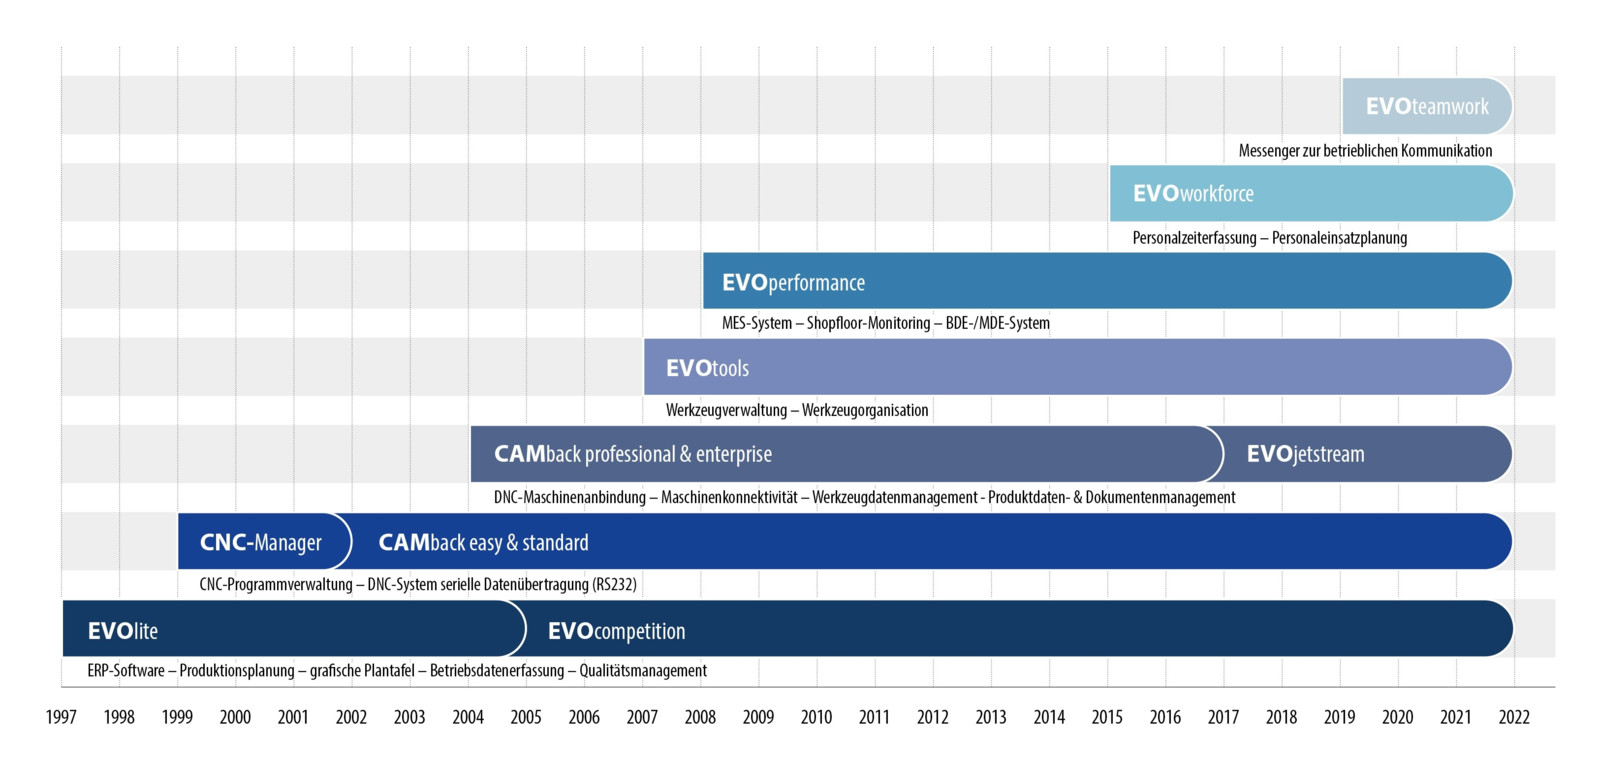 EVO startete 1997 mit der Entwicklung von Computerprogrammen. Die Software-Entwickler planen jetzt schon weit in die Zukunft mit den Themen Automatisierung, autonome Steuerungen und Integration von Robotern.